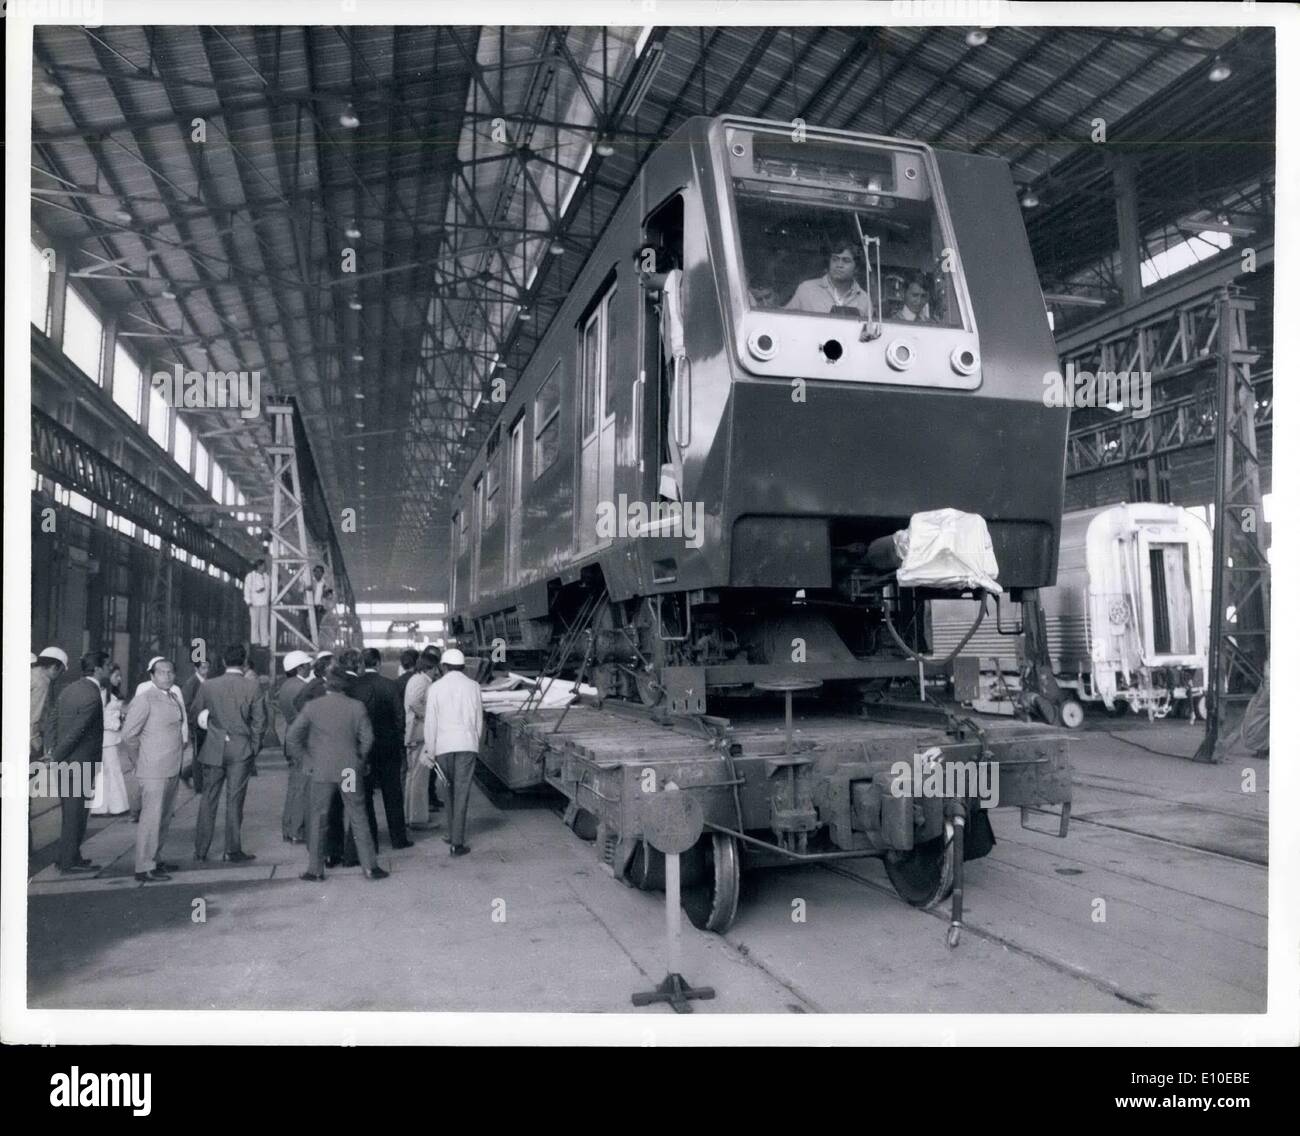 08 août, 1972 - '''' VOITURES PRODUITES AU MEXIQUE : Voitures pour le métro de Mexico City sont fabriqués sous licence à l'usine Renault nationalisé dans Sahagun, courir sur des pneus en caoutchouc. Le président Echeverria a visité l'usine le 17 août 1972 lors de la première voiture a été achevé. Le Mexique produit Renault aussi 16 000 voitures, ils prévoient d'augmenter de 32 000 oreilles au cours des deux prochaines années. OPS : président Echeverria à chez Renault, le moteur et le modèle de l'usine produisant les moteurs Diesel Renault et Dina, RR et voitures de métro. Banque D'Images